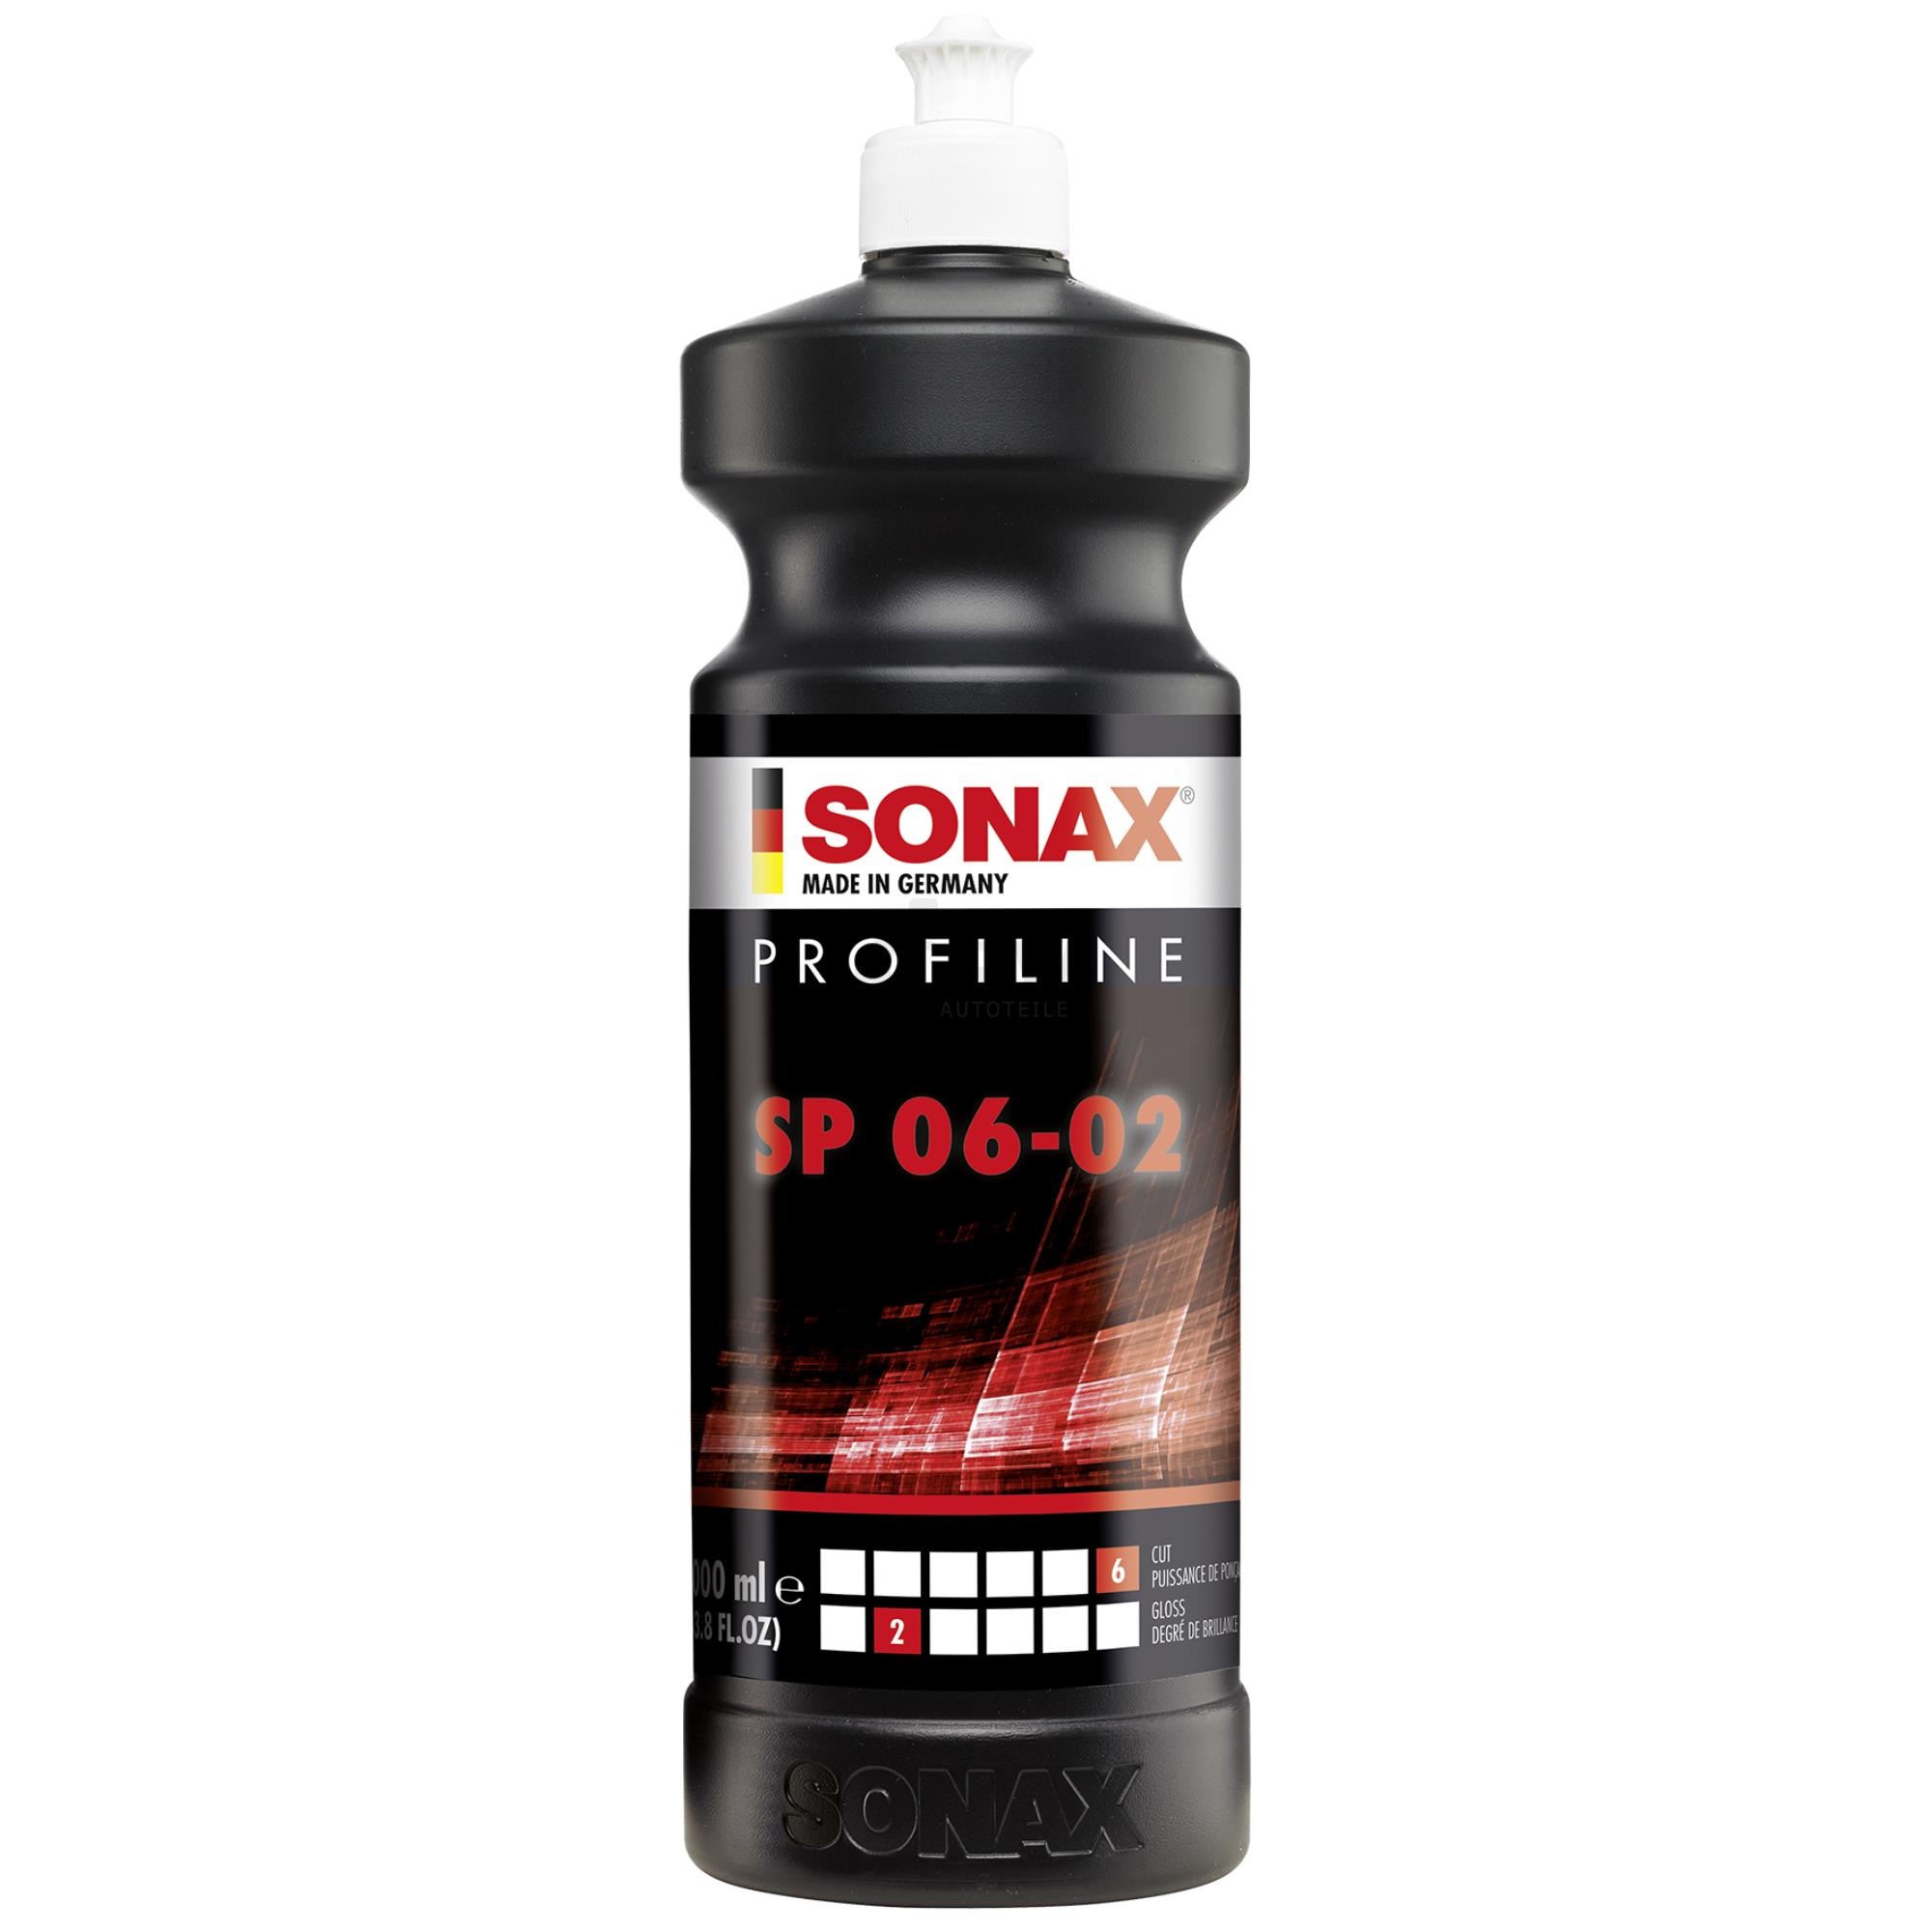 SONAX 03203000 PROFILINE SP 06-02 Schleifpaste silikonfrei 1 Liter